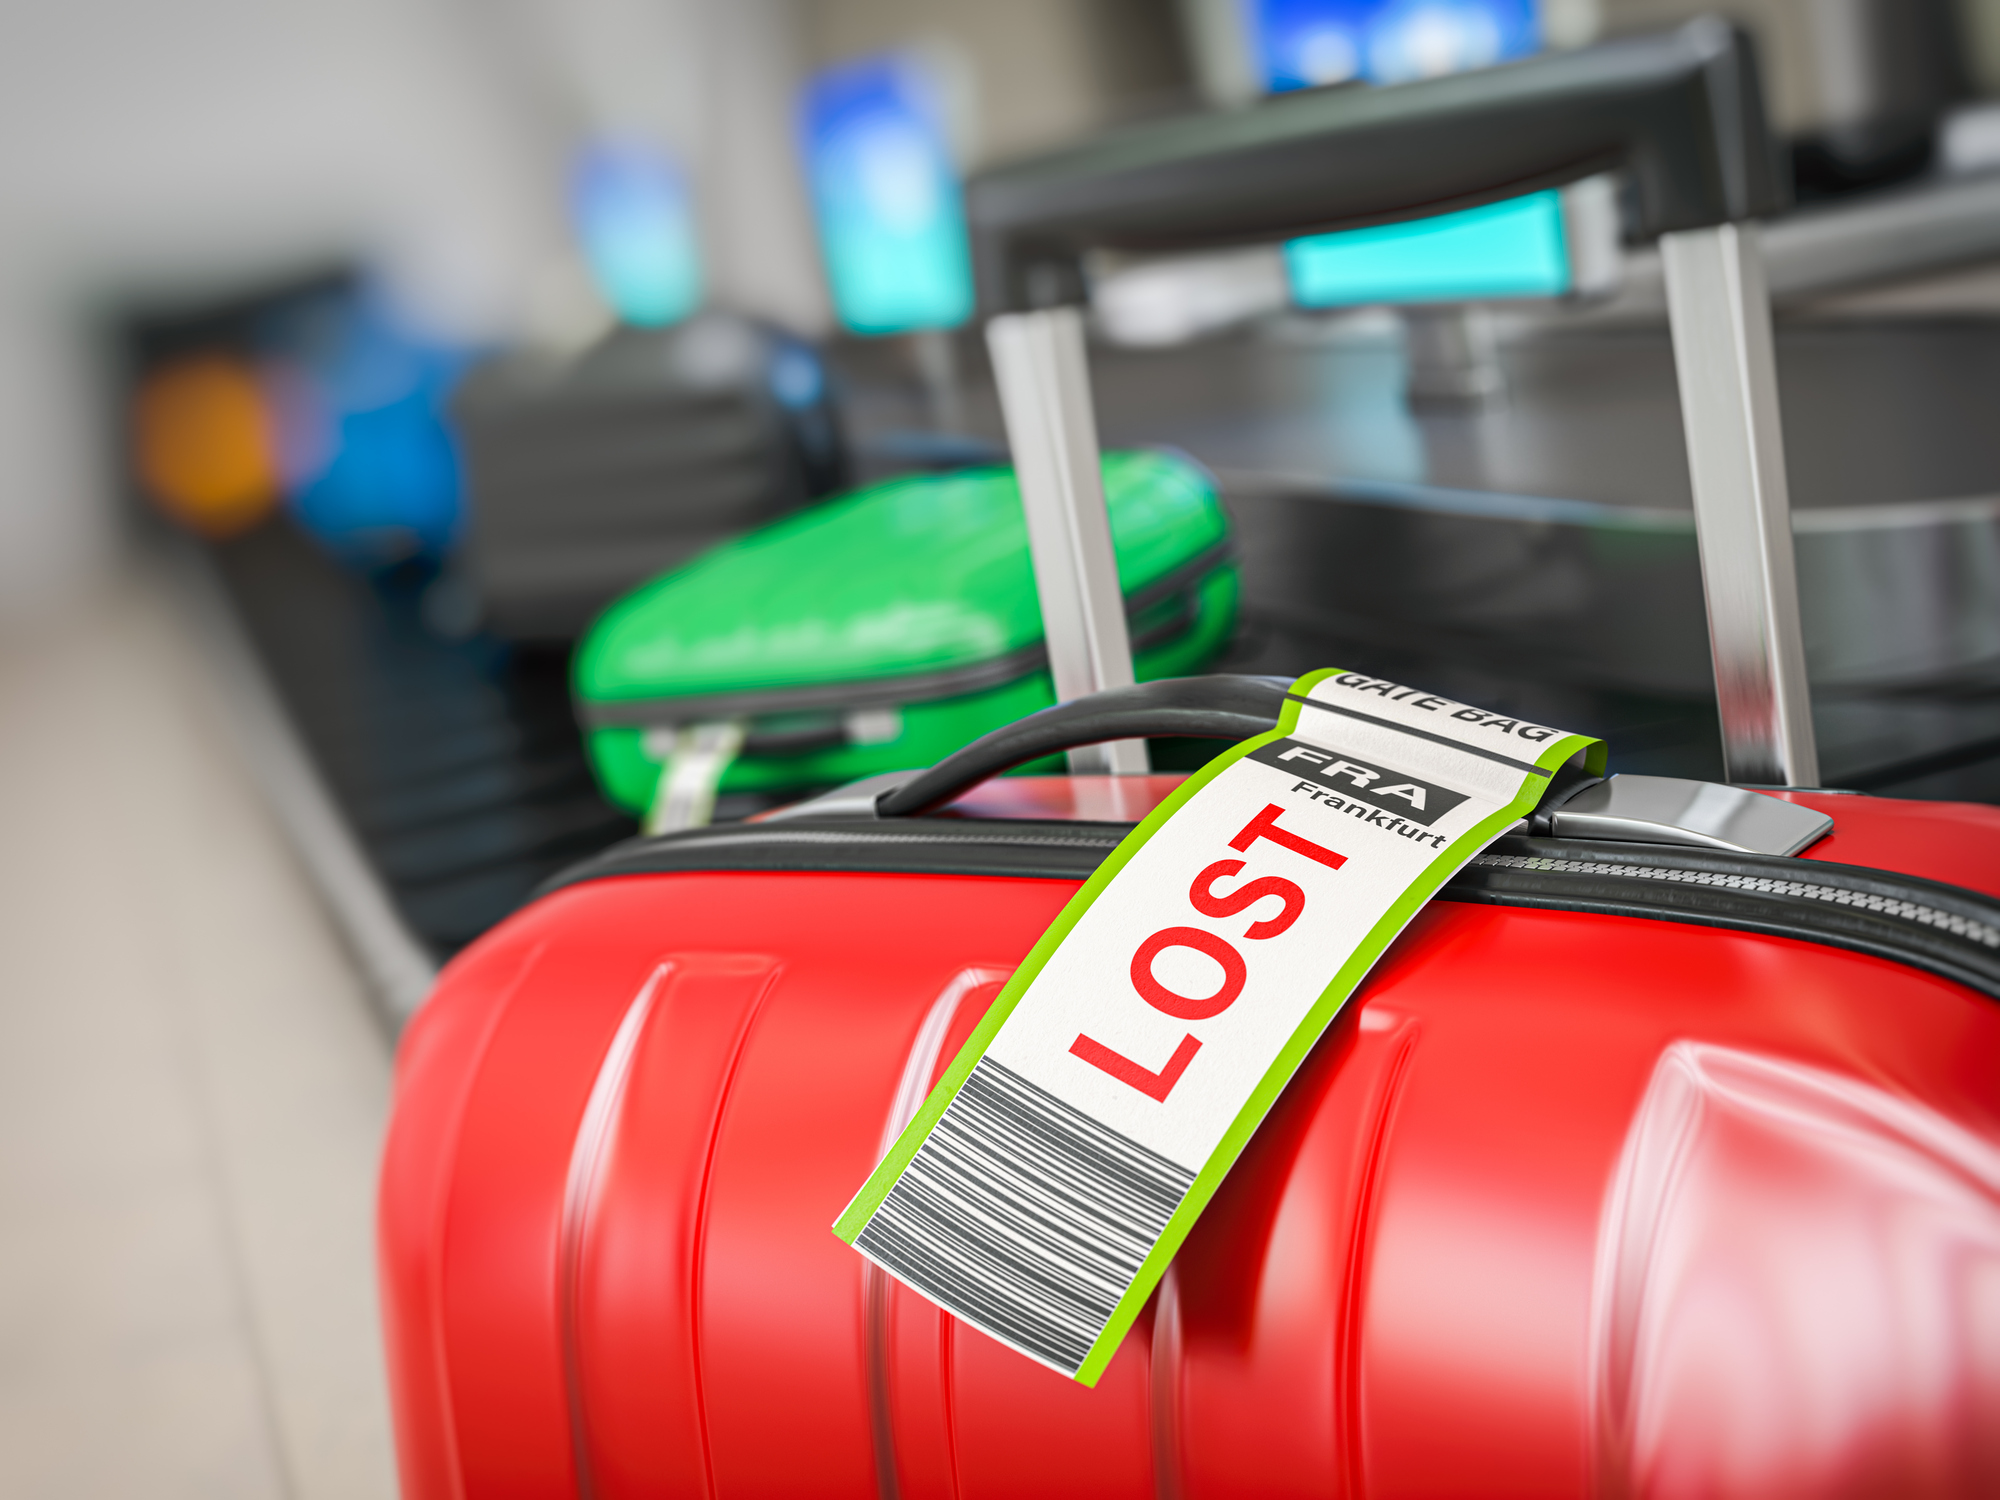 Im Vordergrund steht ein Koffer mit einem Bag Tag auf dem „LOST“ steht, im Hintergrund fahren weitere Koffer auf einem Gepäckband.